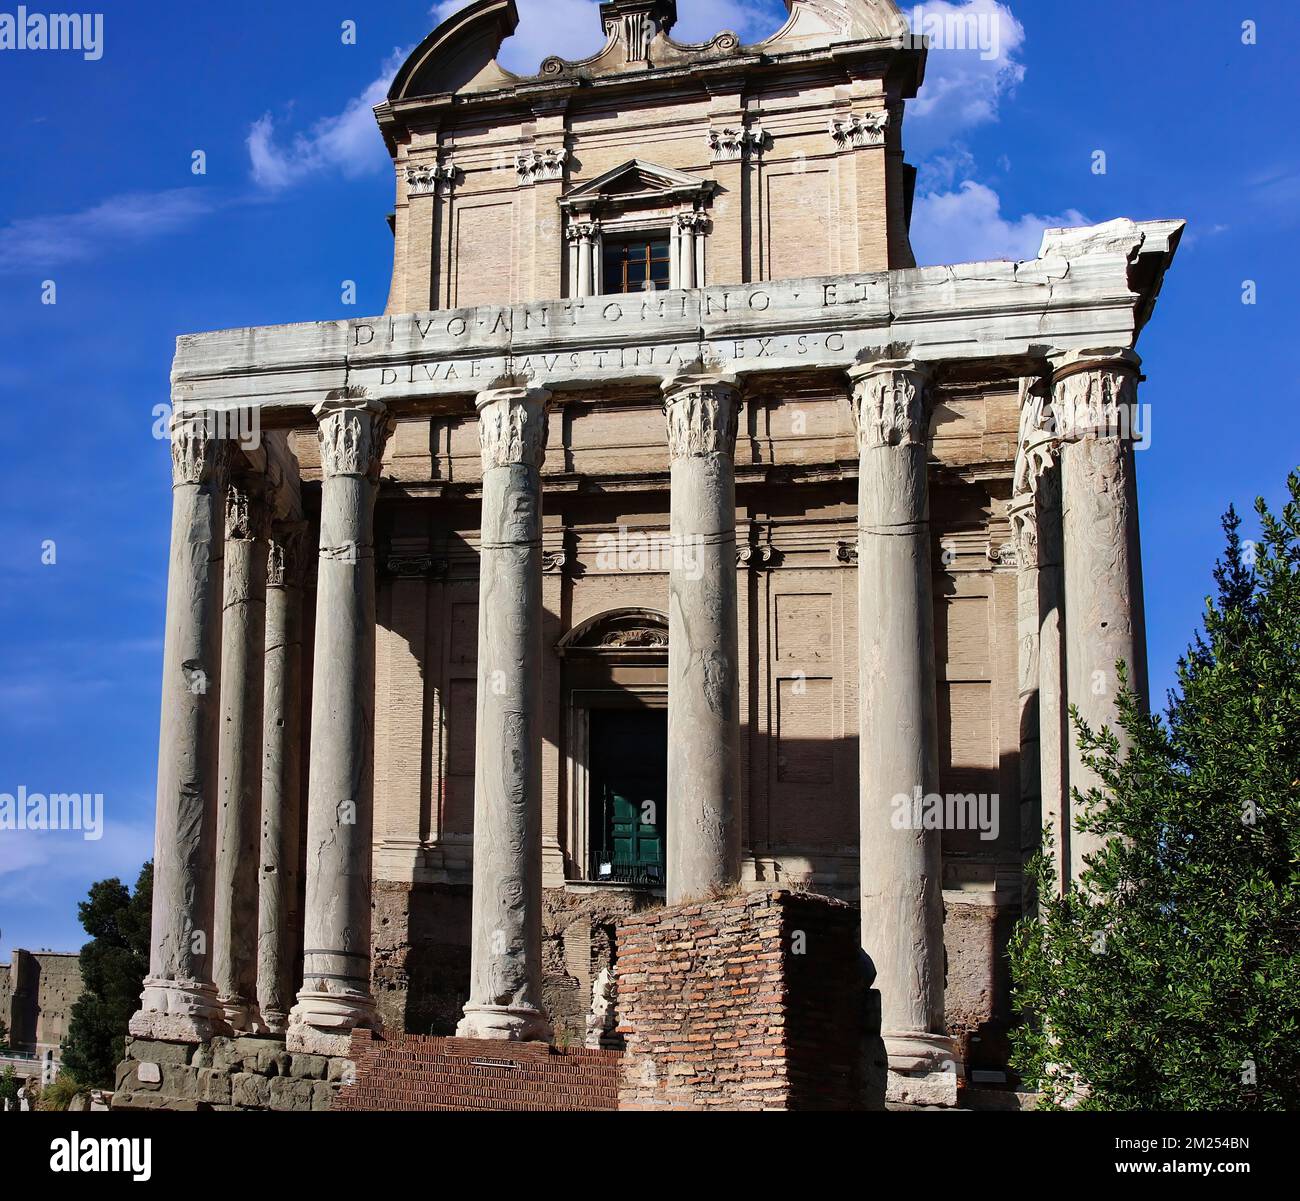 Der Tempel von Antoninus e Faustina im Forum Romanum, dem politischen, rechtlichen, religiösen und wirtschaftlichen Zentrum der Stadt Rom Stockfoto